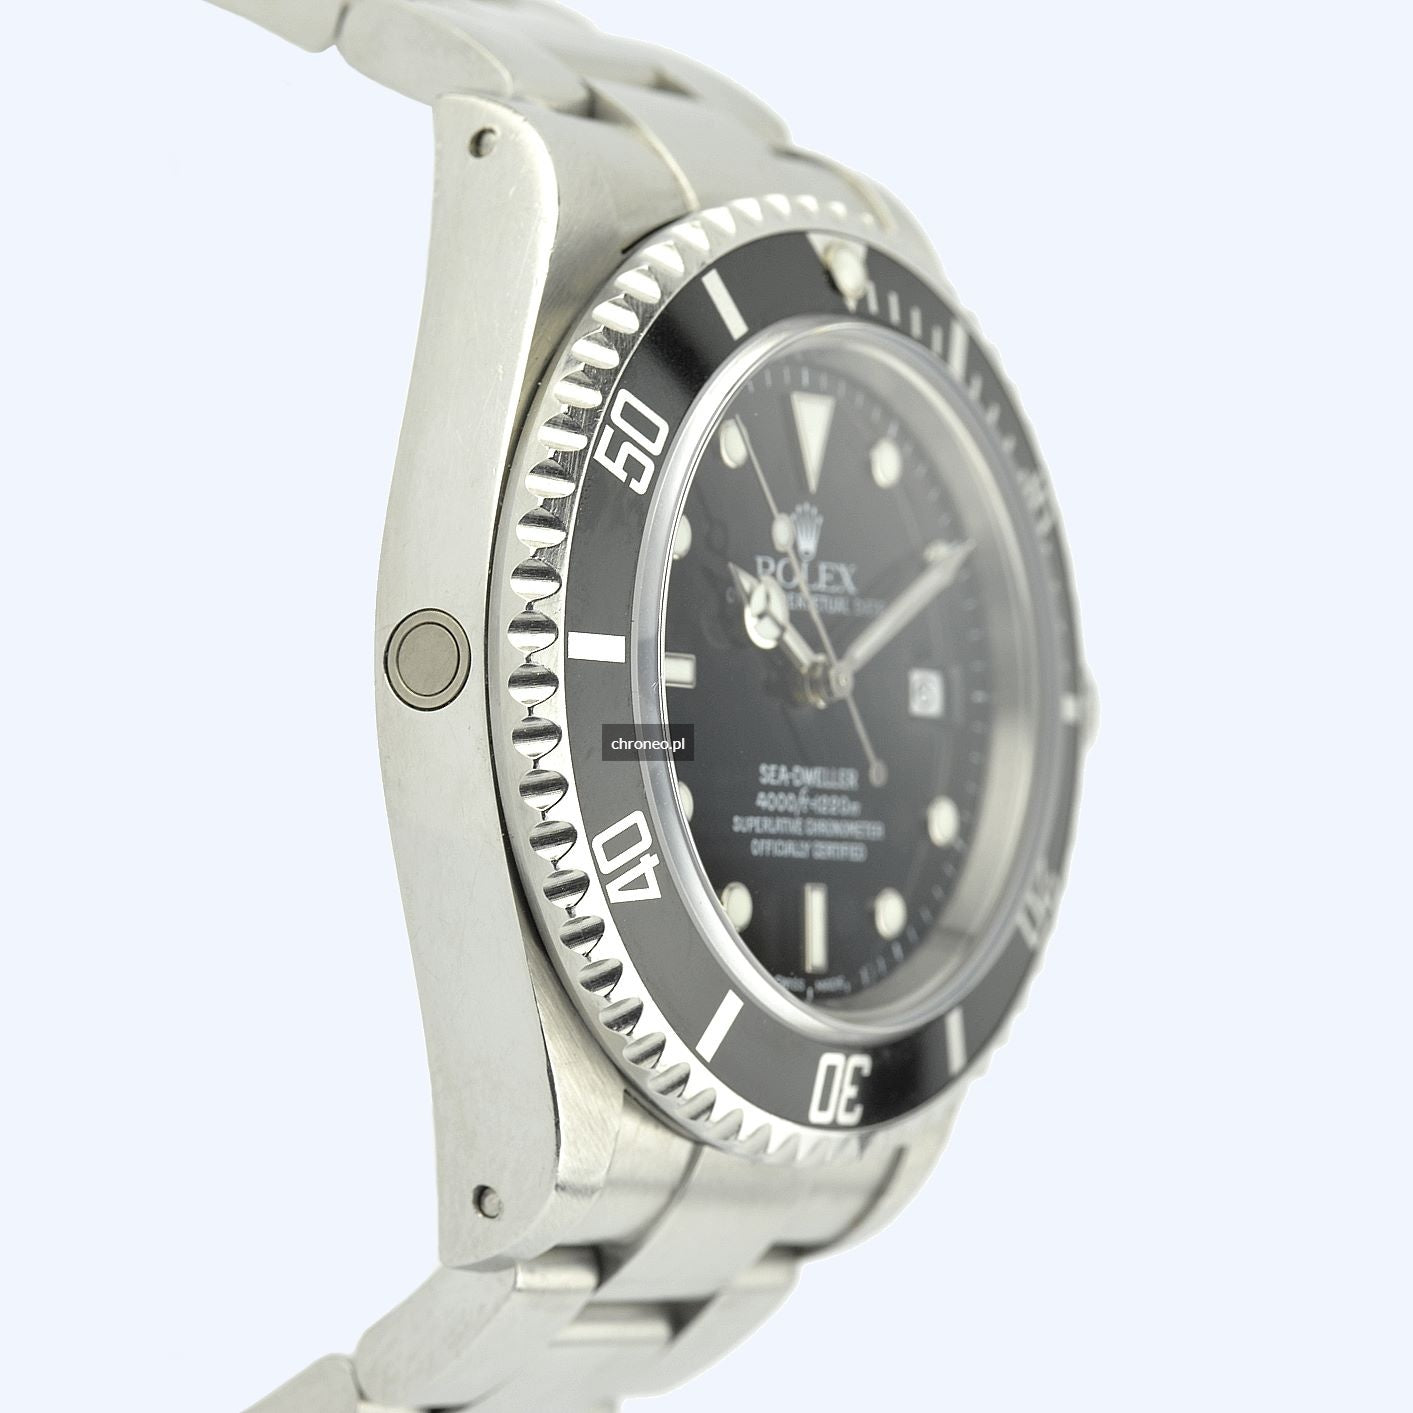 Rolex Sea-Dweller 4000 ref. 16600 case